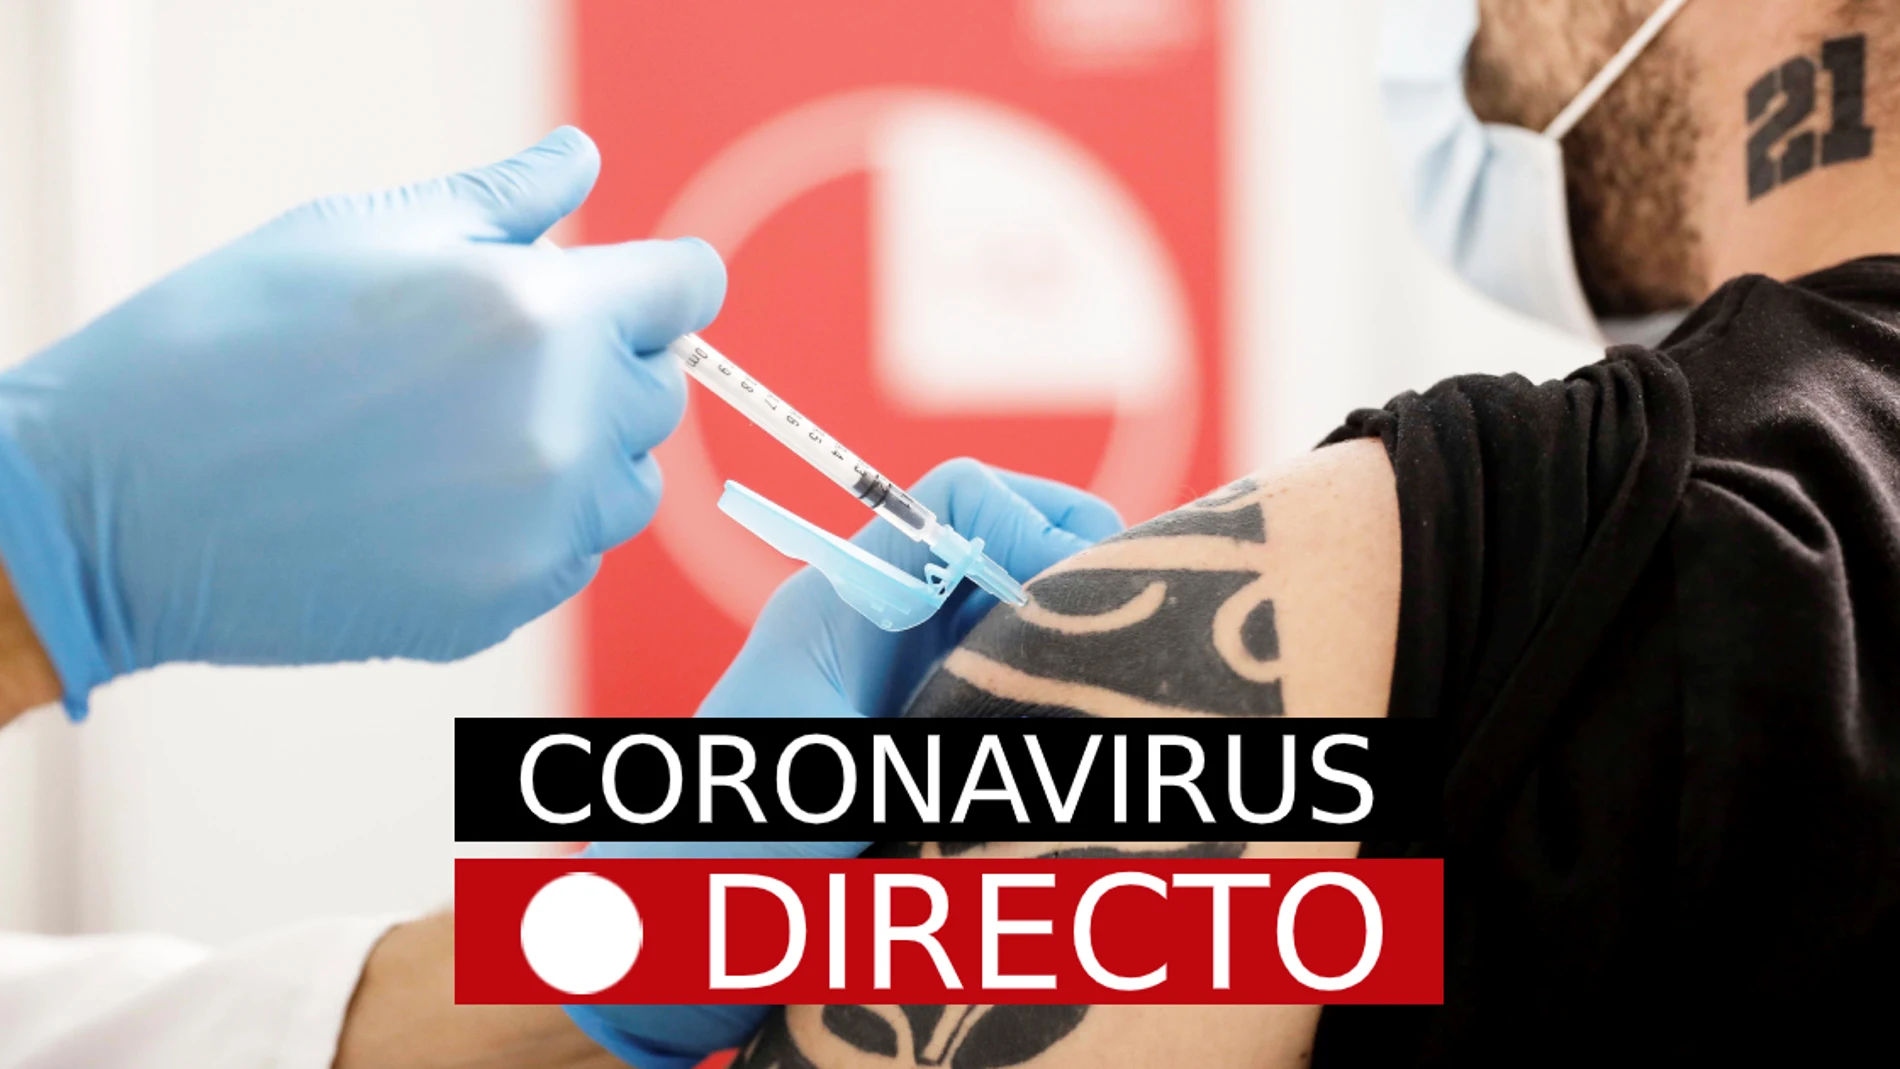 Última hora de coronavirus: certificado Covid-19, vacuna en España y restricciones, hoy